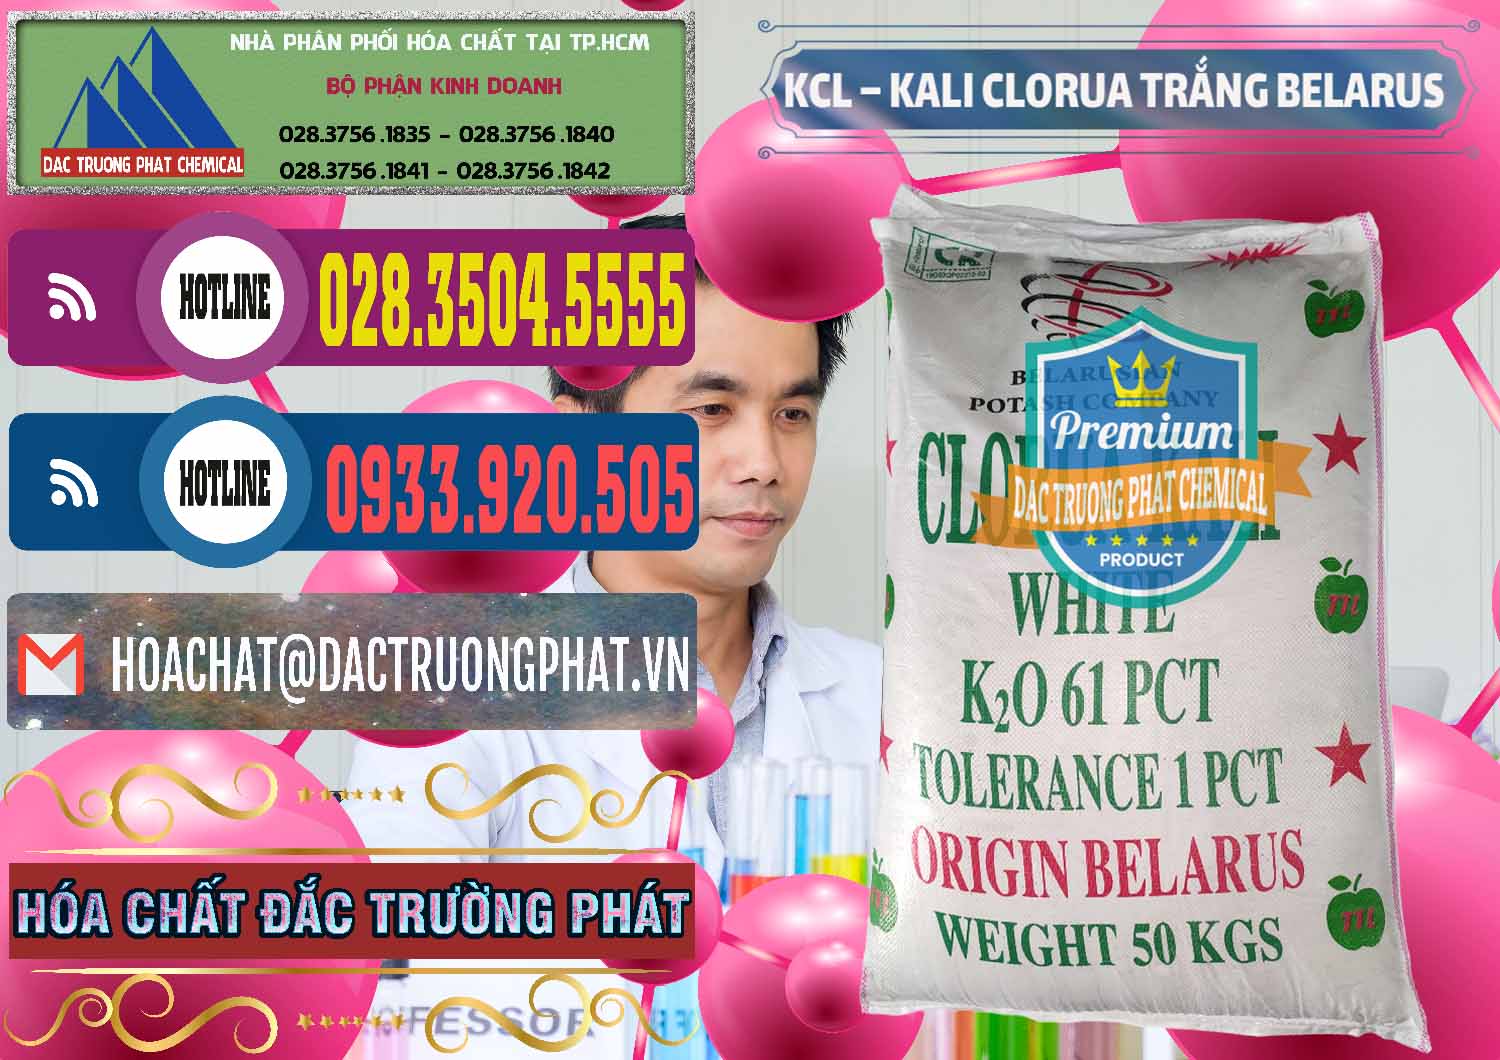 Nơi chuyên kinh doanh _ bán KCL – Kali Clorua Trắng Belarus - 0085 - Nhà cung cấp ( phân phối ) hóa chất tại TP.HCM - muabanhoachat.com.vn